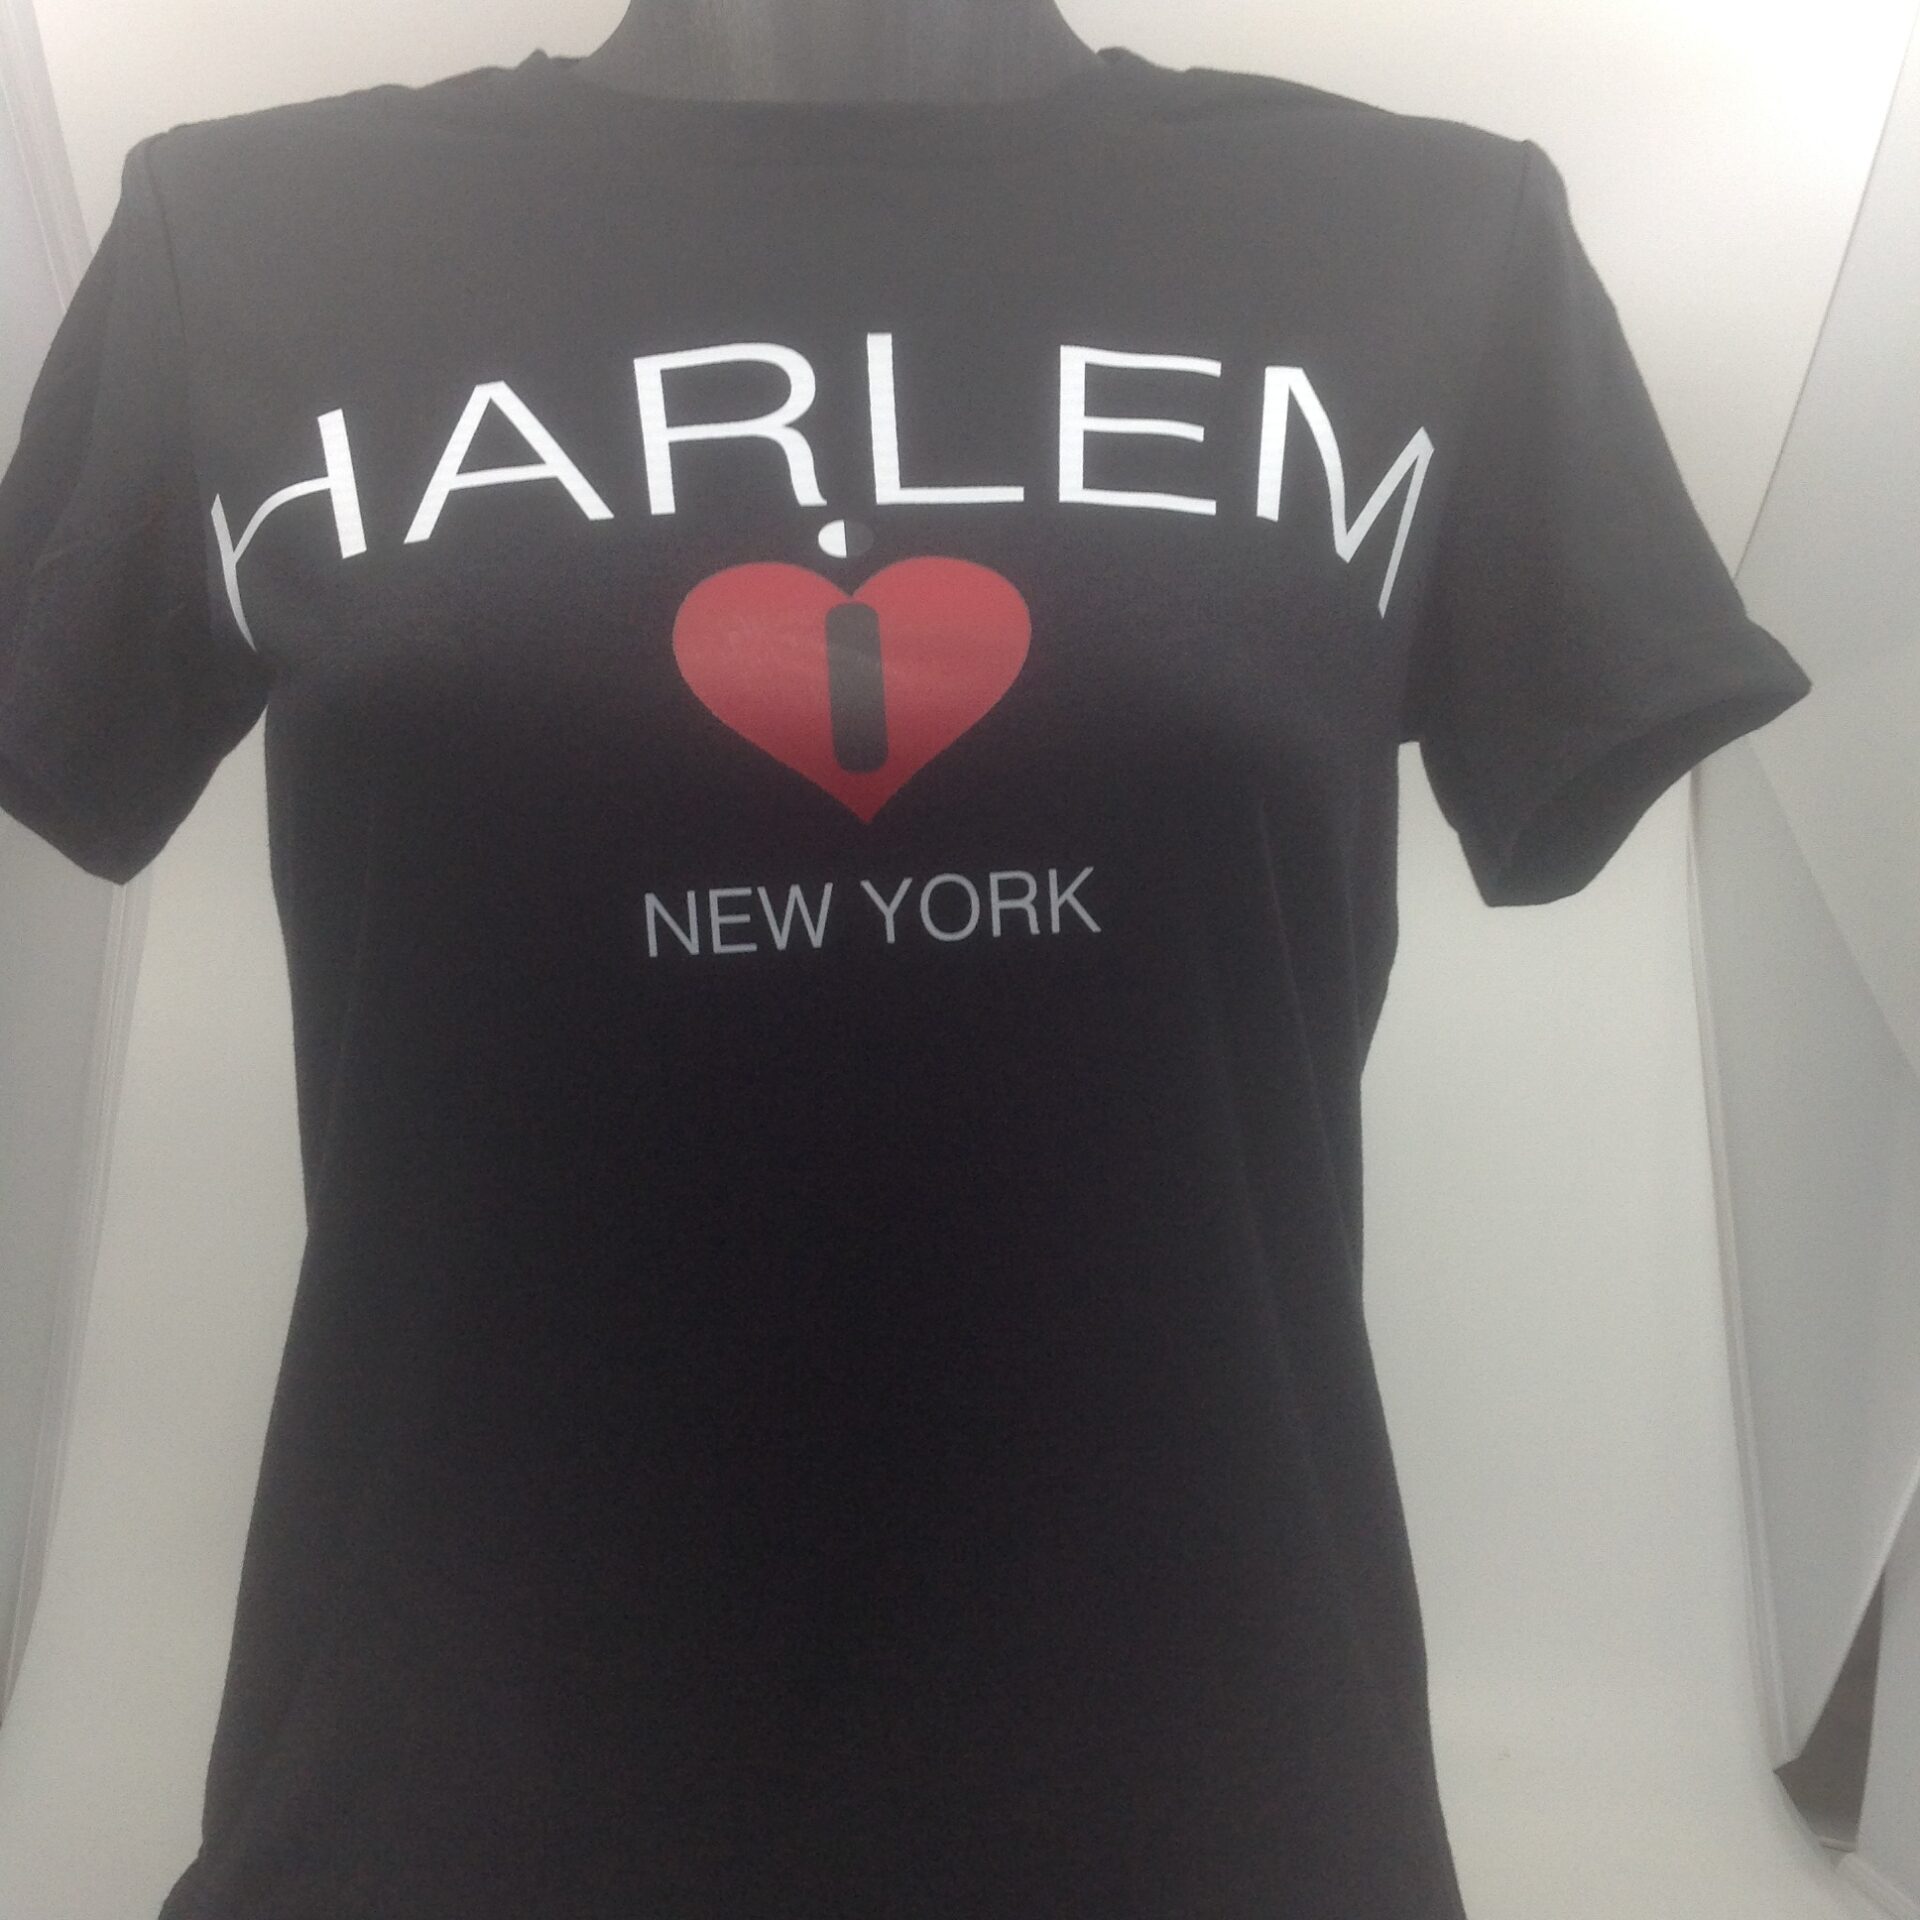 I Love Harlem New York